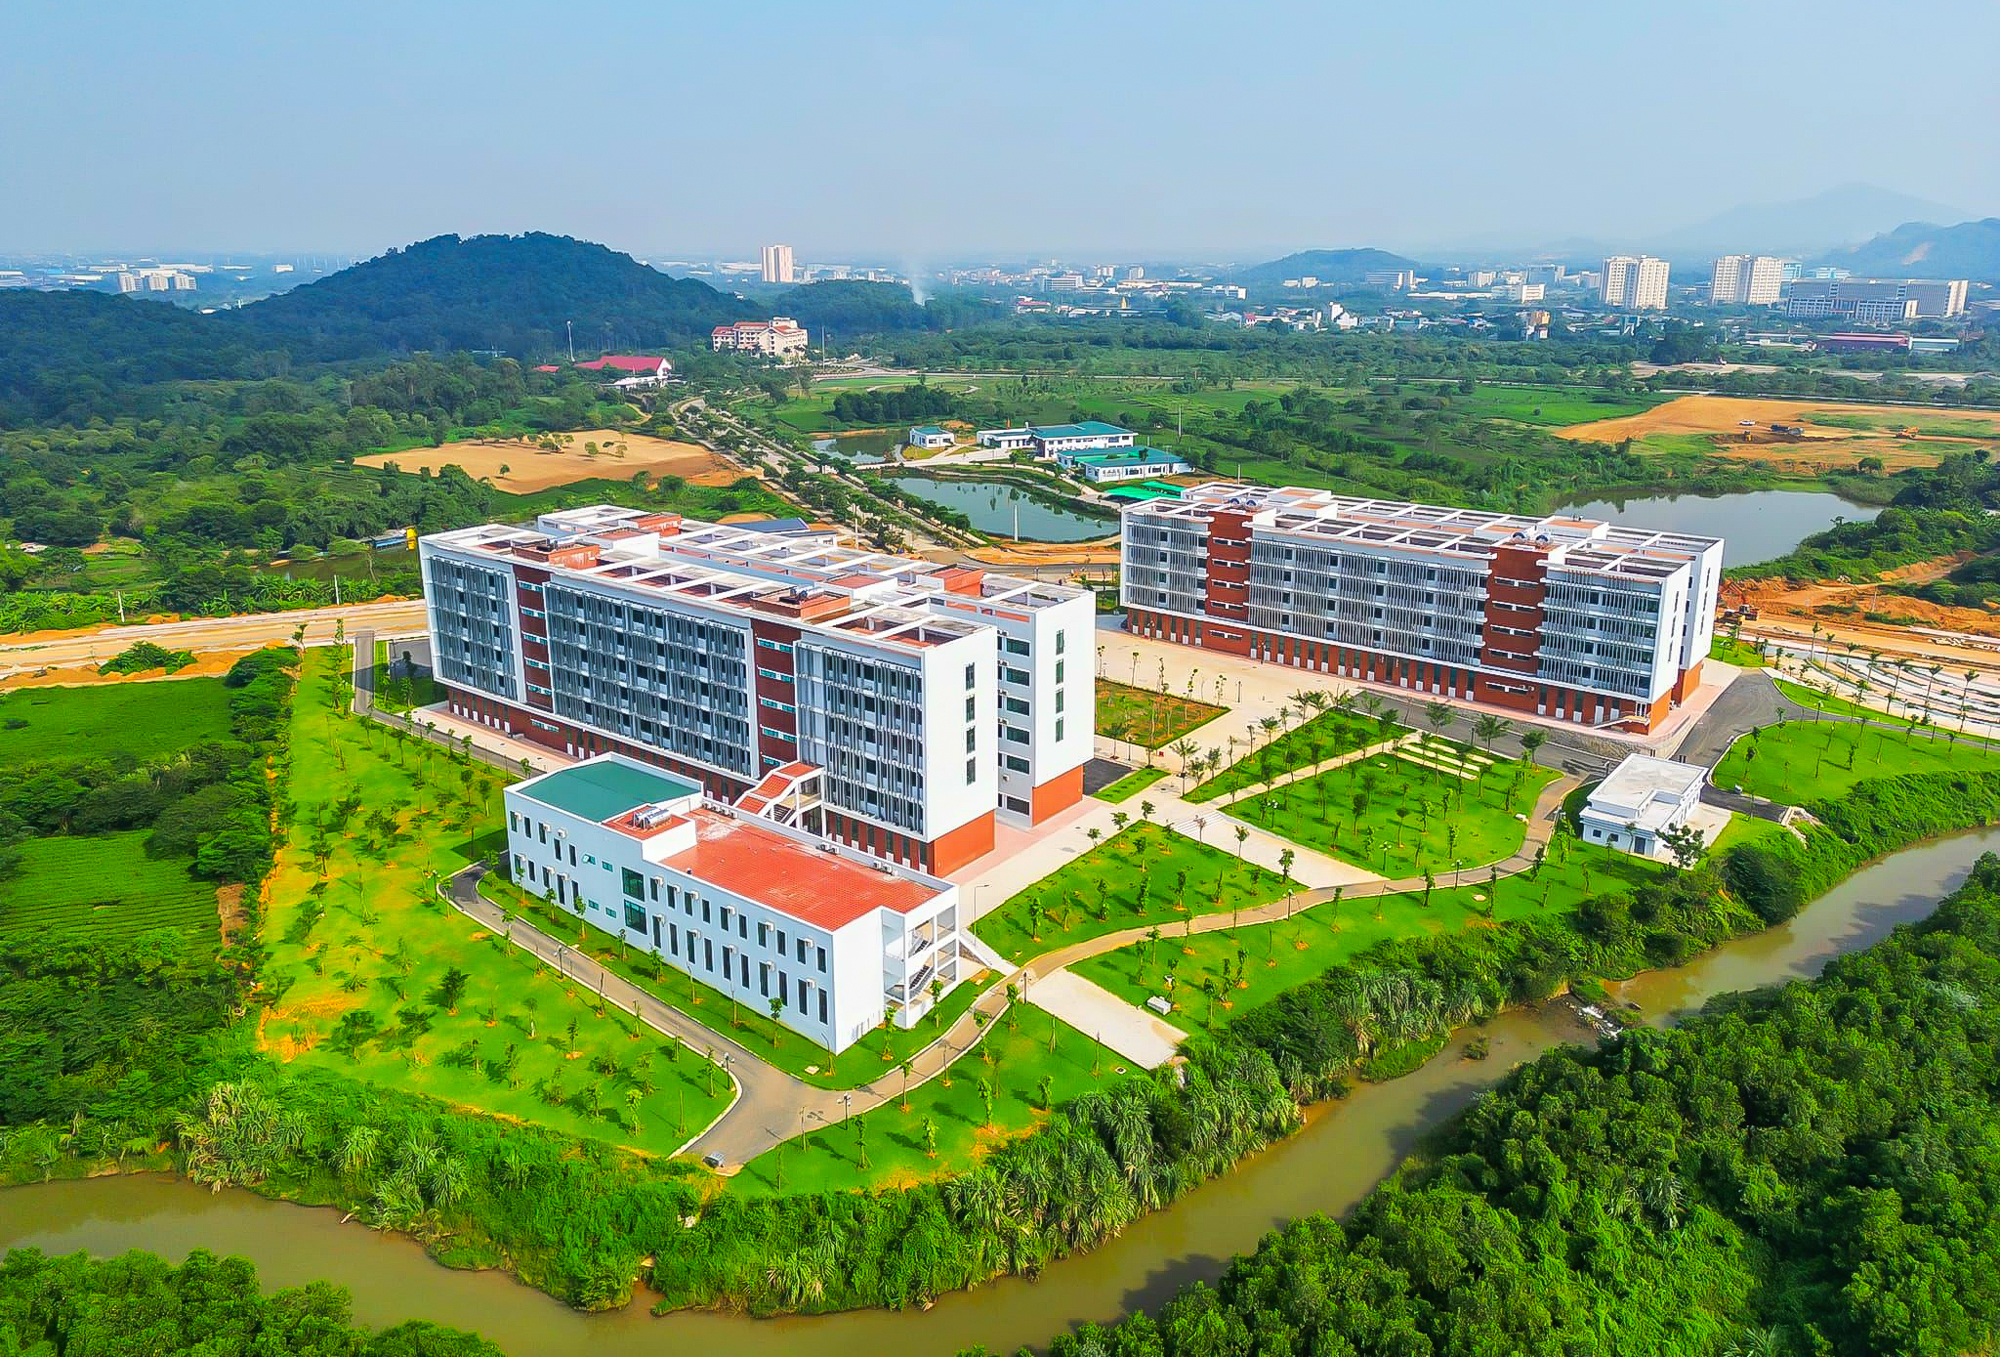 Đại học rộng nhất Việt Nam, diện tích gấp đôi quận Hoàn Kiếm  - Ảnh 4.